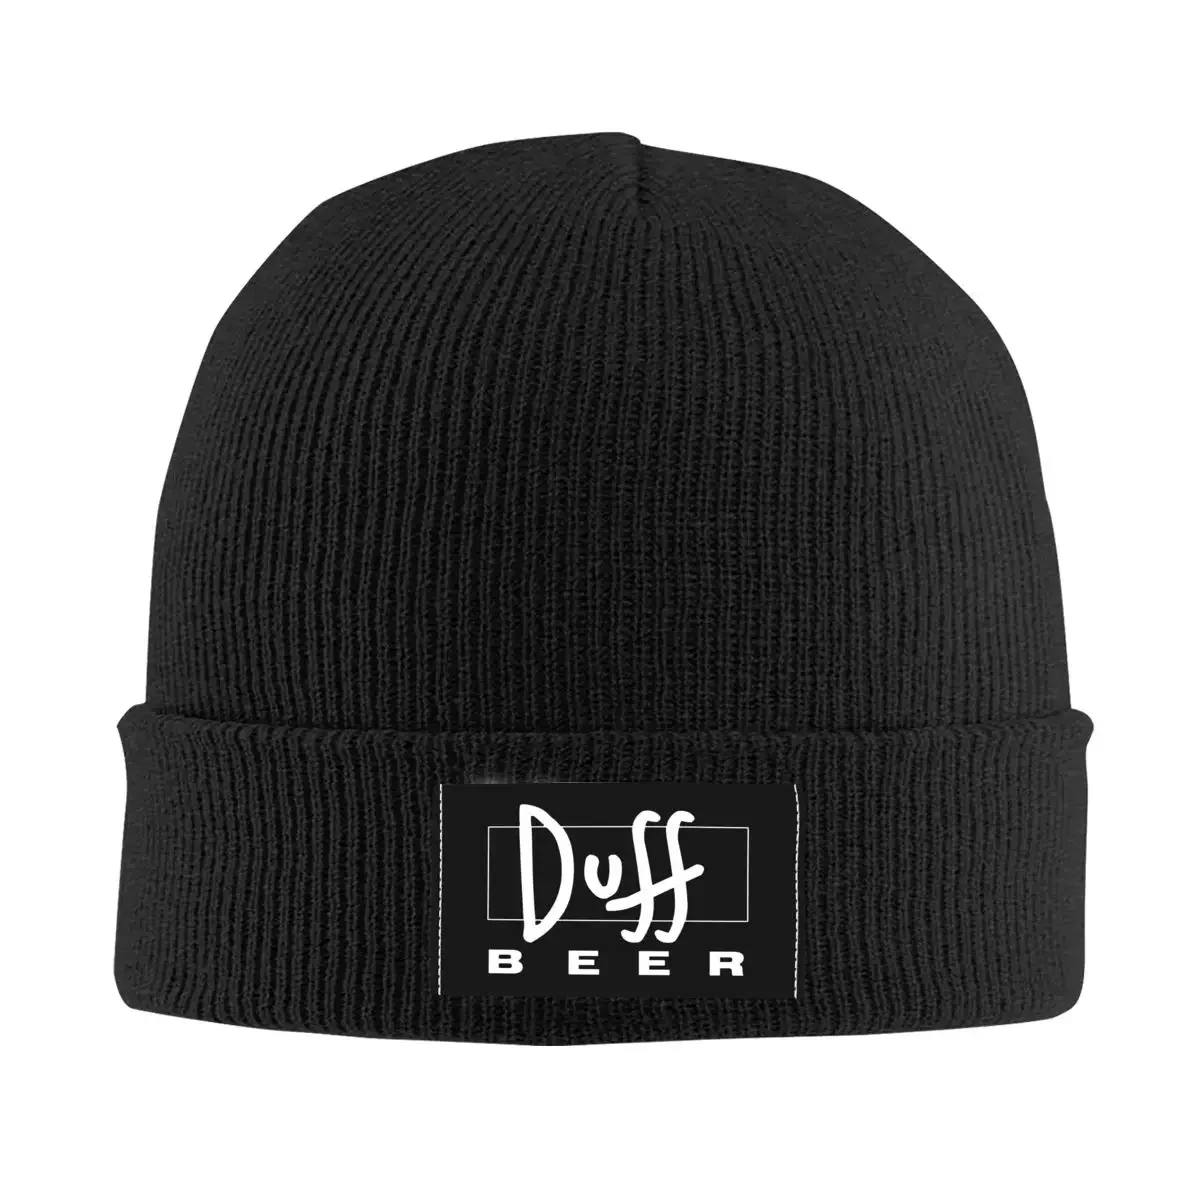 

Duff пивные шапочки облегающие шапки для мужчин и женщин унисекс модная зимняя теплая вязаная шапка взрослые шляпы головные уборы